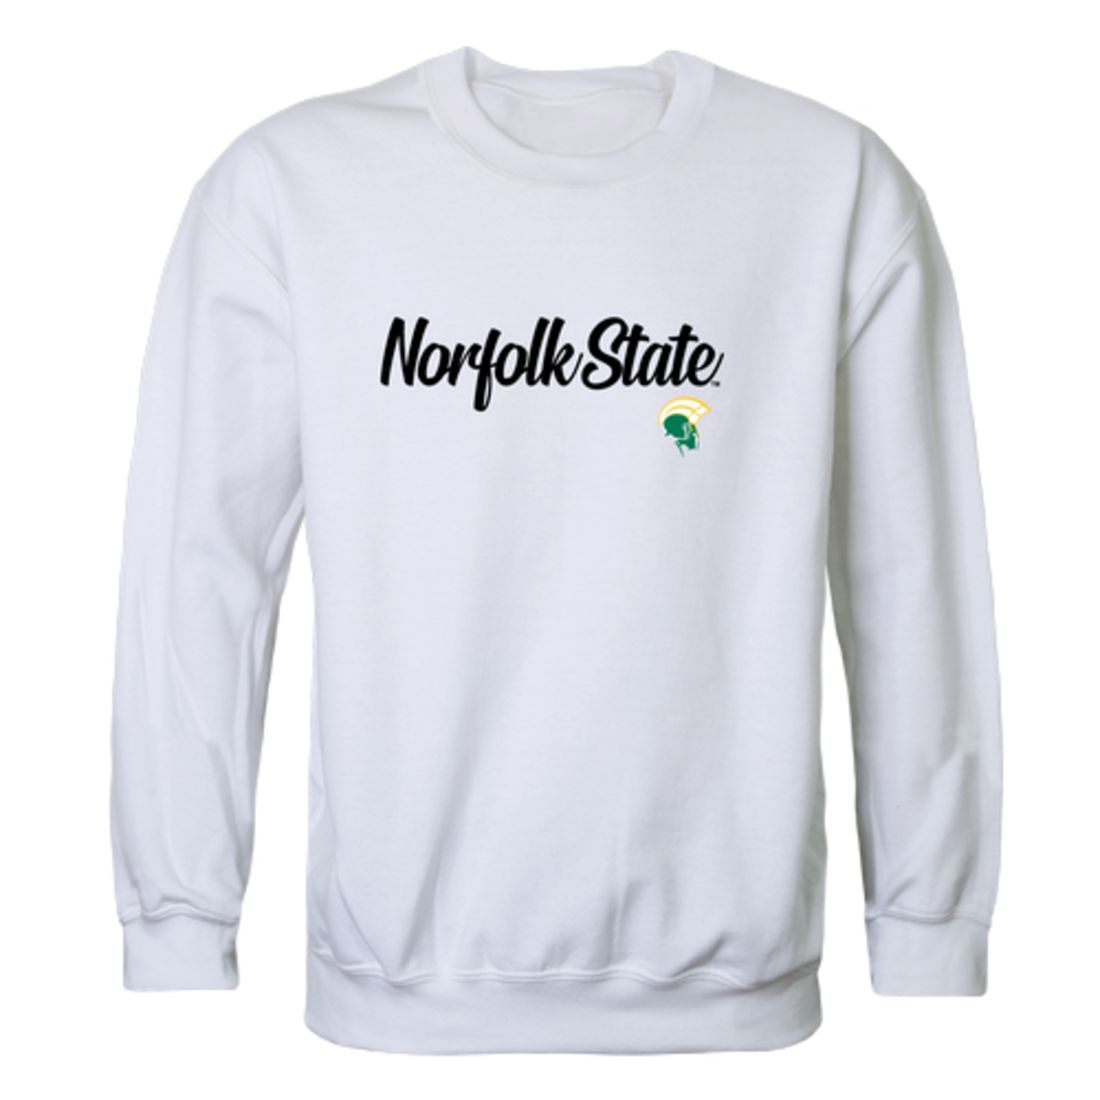 NSU Norfolk State University Spartans Script Crewneck Pullover Sweatshirt Sweater Black-Campus-Wardrobe